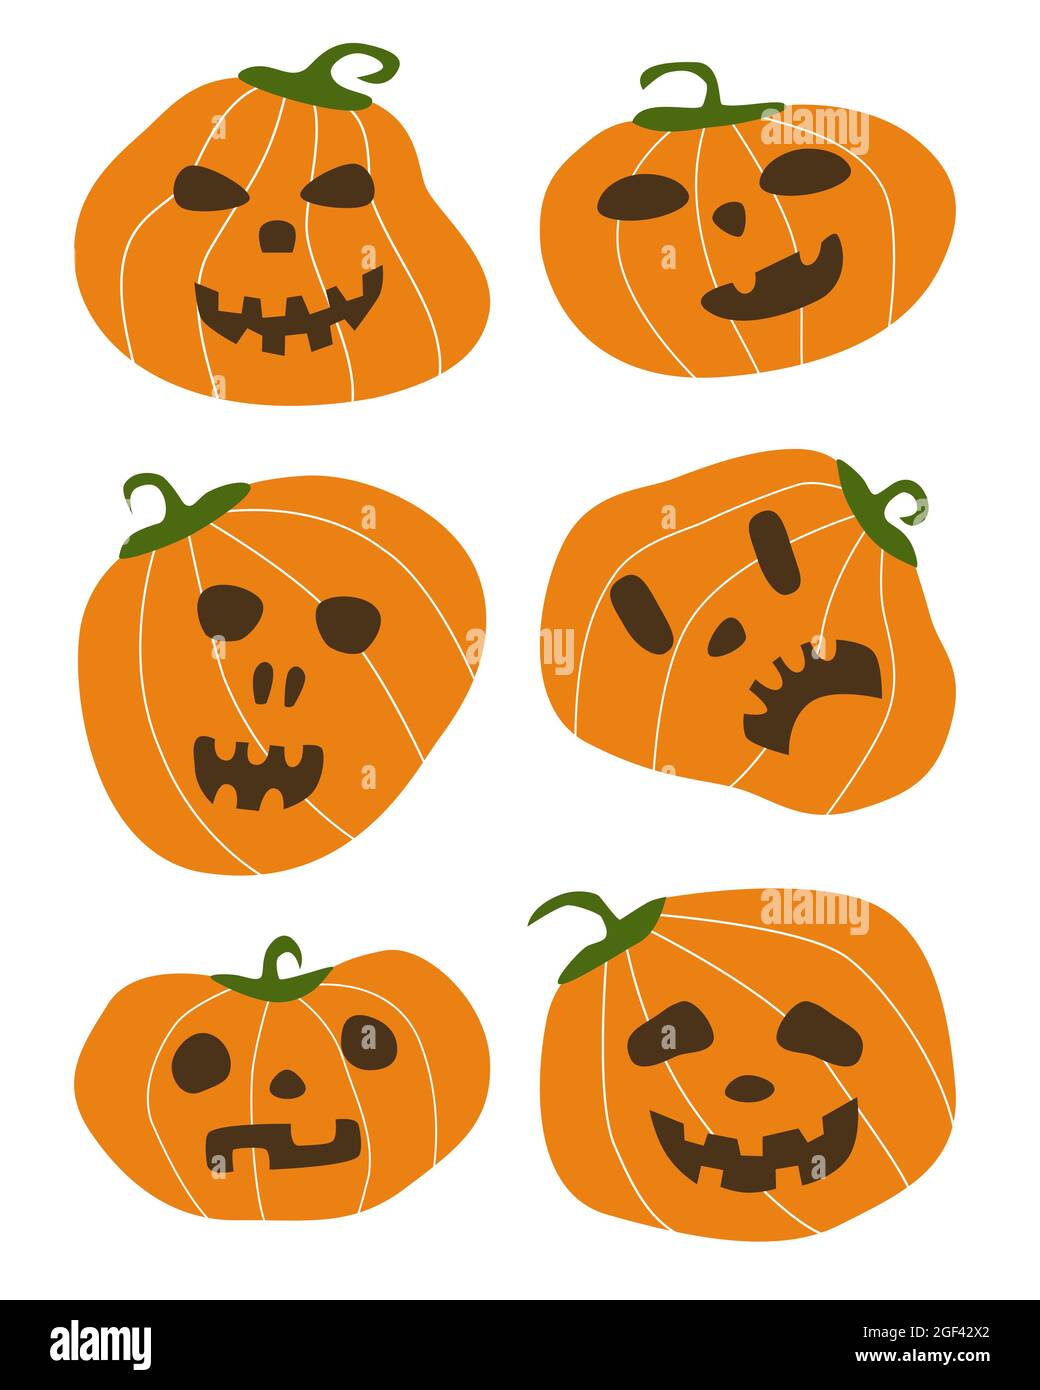 Set von einfachen Formen Halloween Farbe Kürbisse. Flache Art unheimlich Angst orange Kürbisse mit dunklen Augen und Mund Vektor-Illustration Stock Vektor